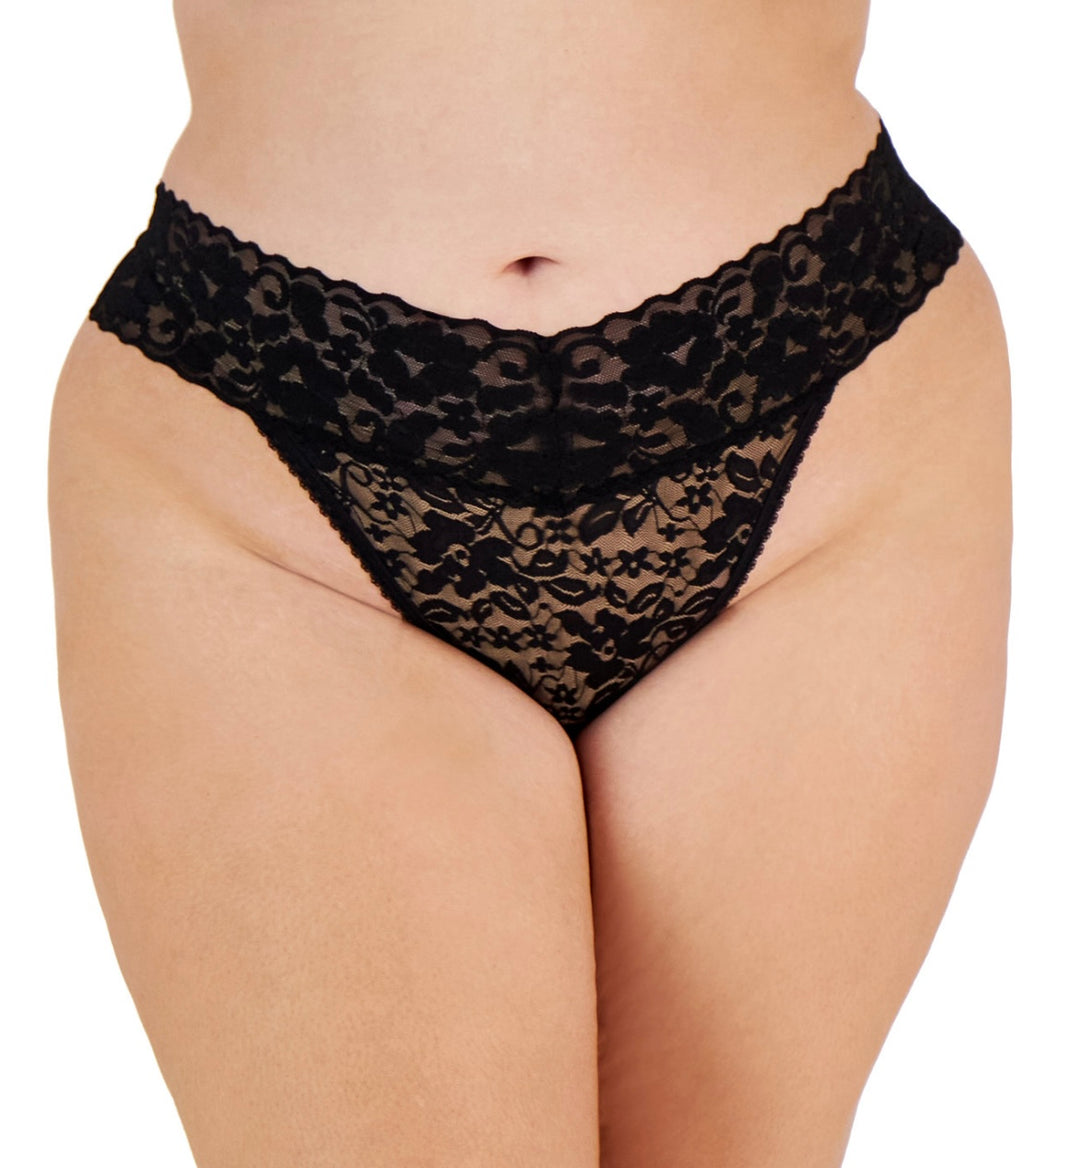 INC International Concepts Women's Plus Size Lace Thong Underwear Lingerie